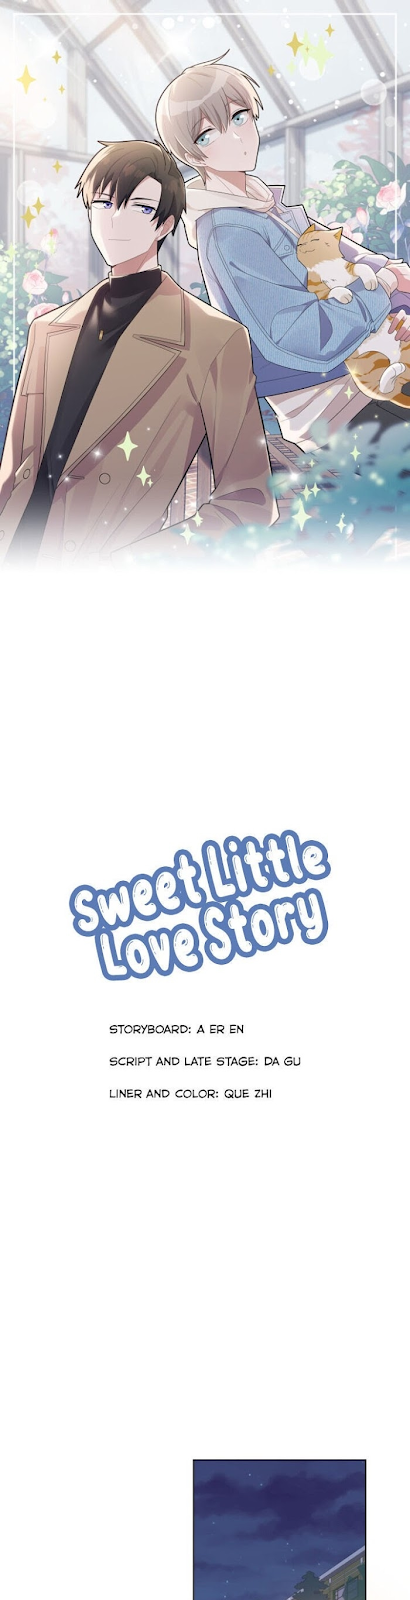 Sweet Little Love Story10 03